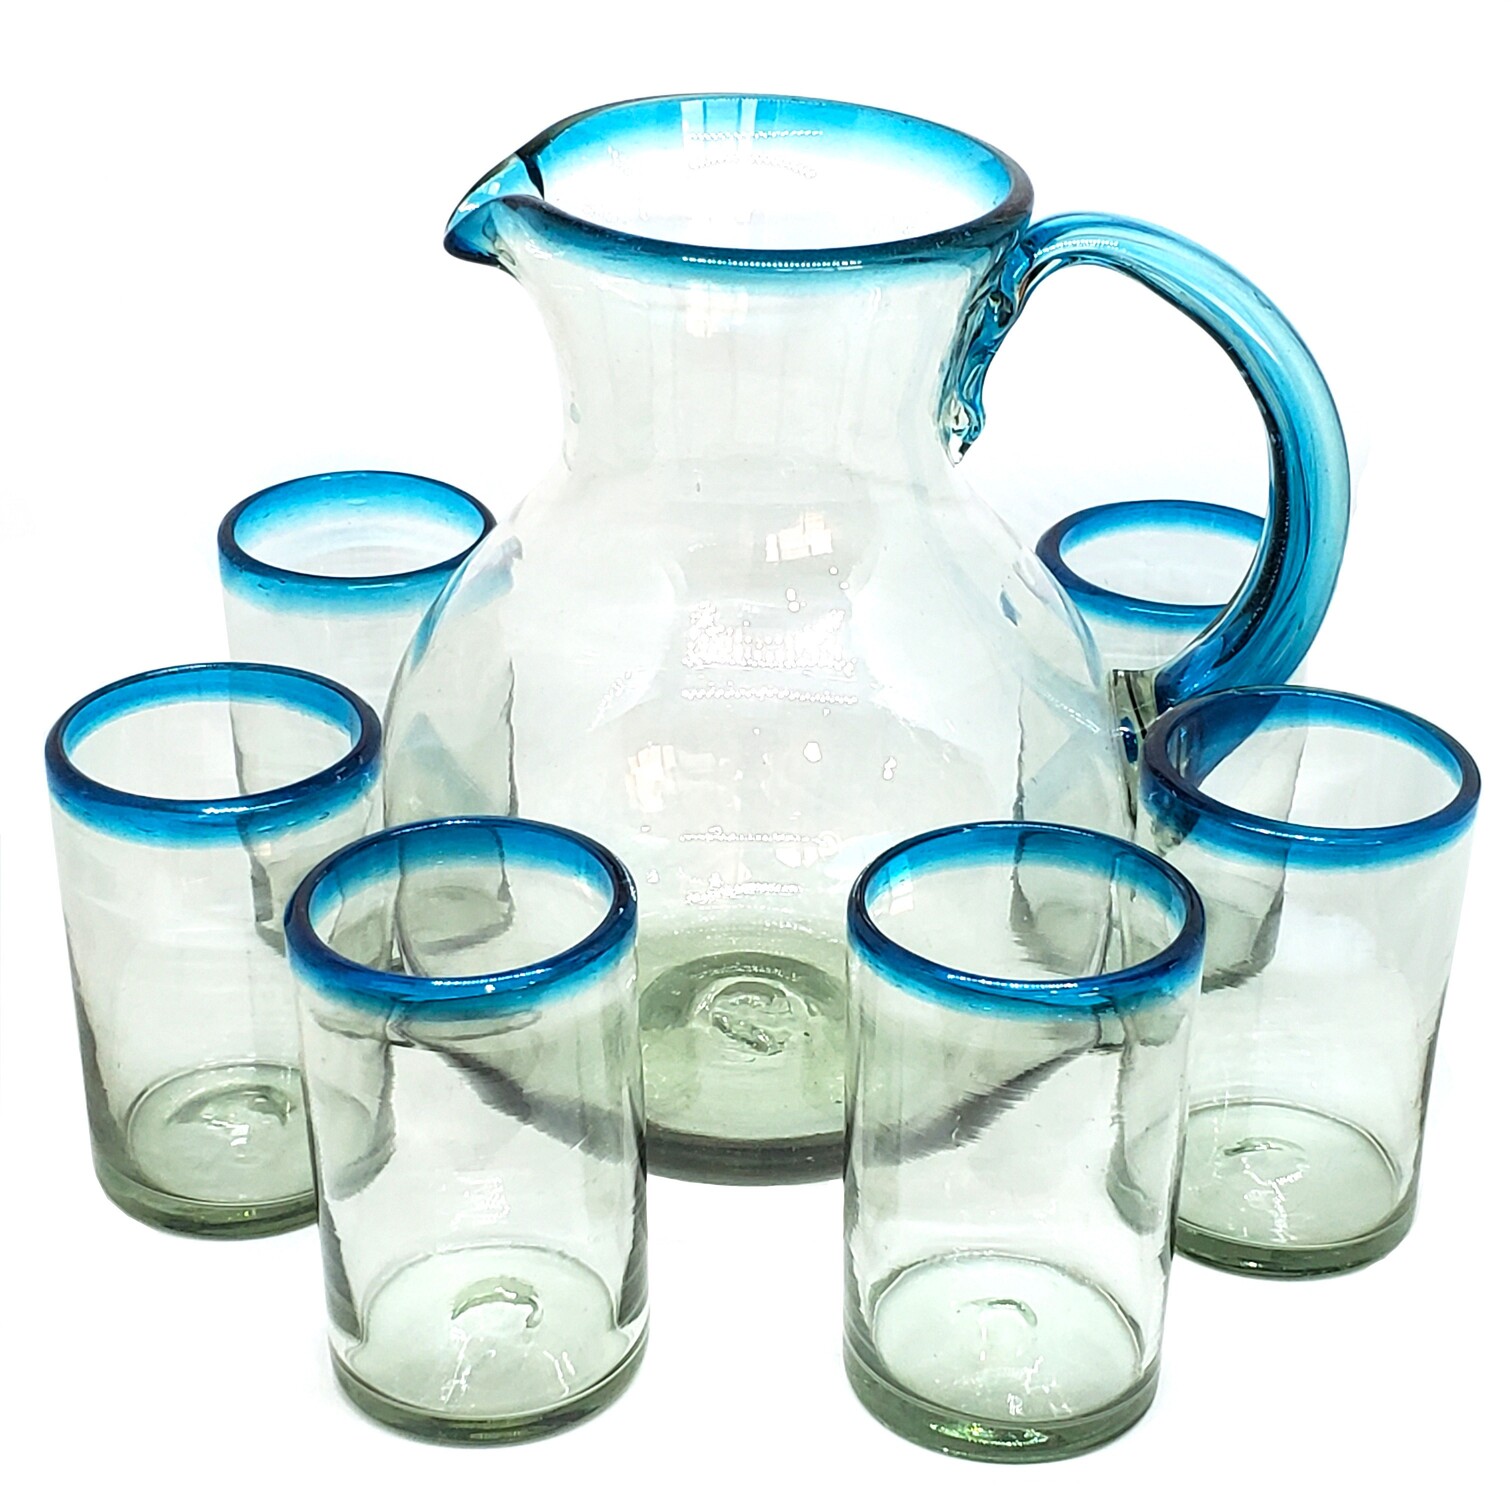 Juego de jarra y 6 vasos grandes con borde azul aqua